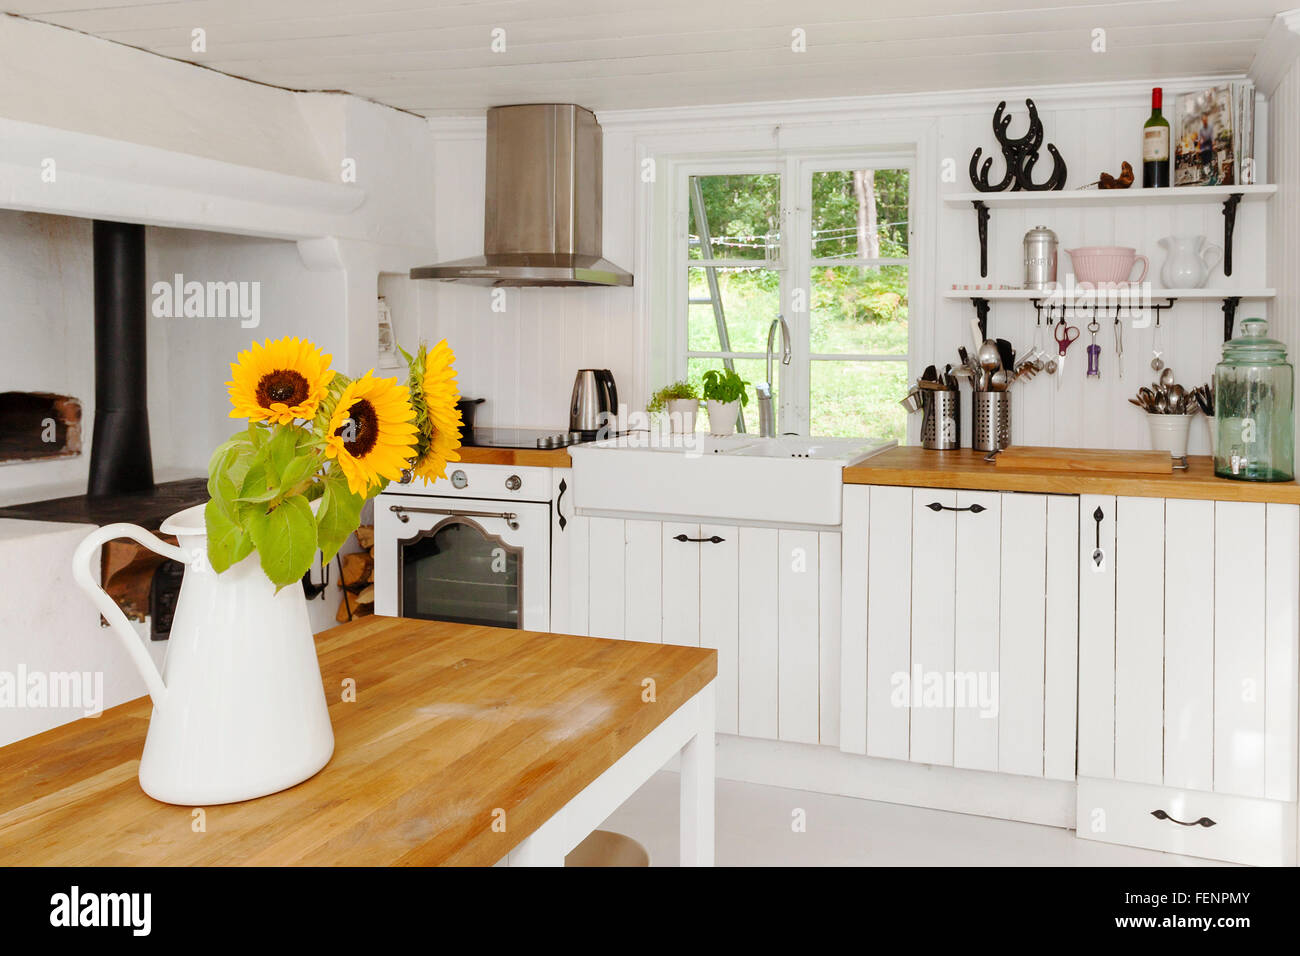 L'intérieur d'une maison de campagne cuisine avec sunfloser à ta table de cuisine Banque D'Images